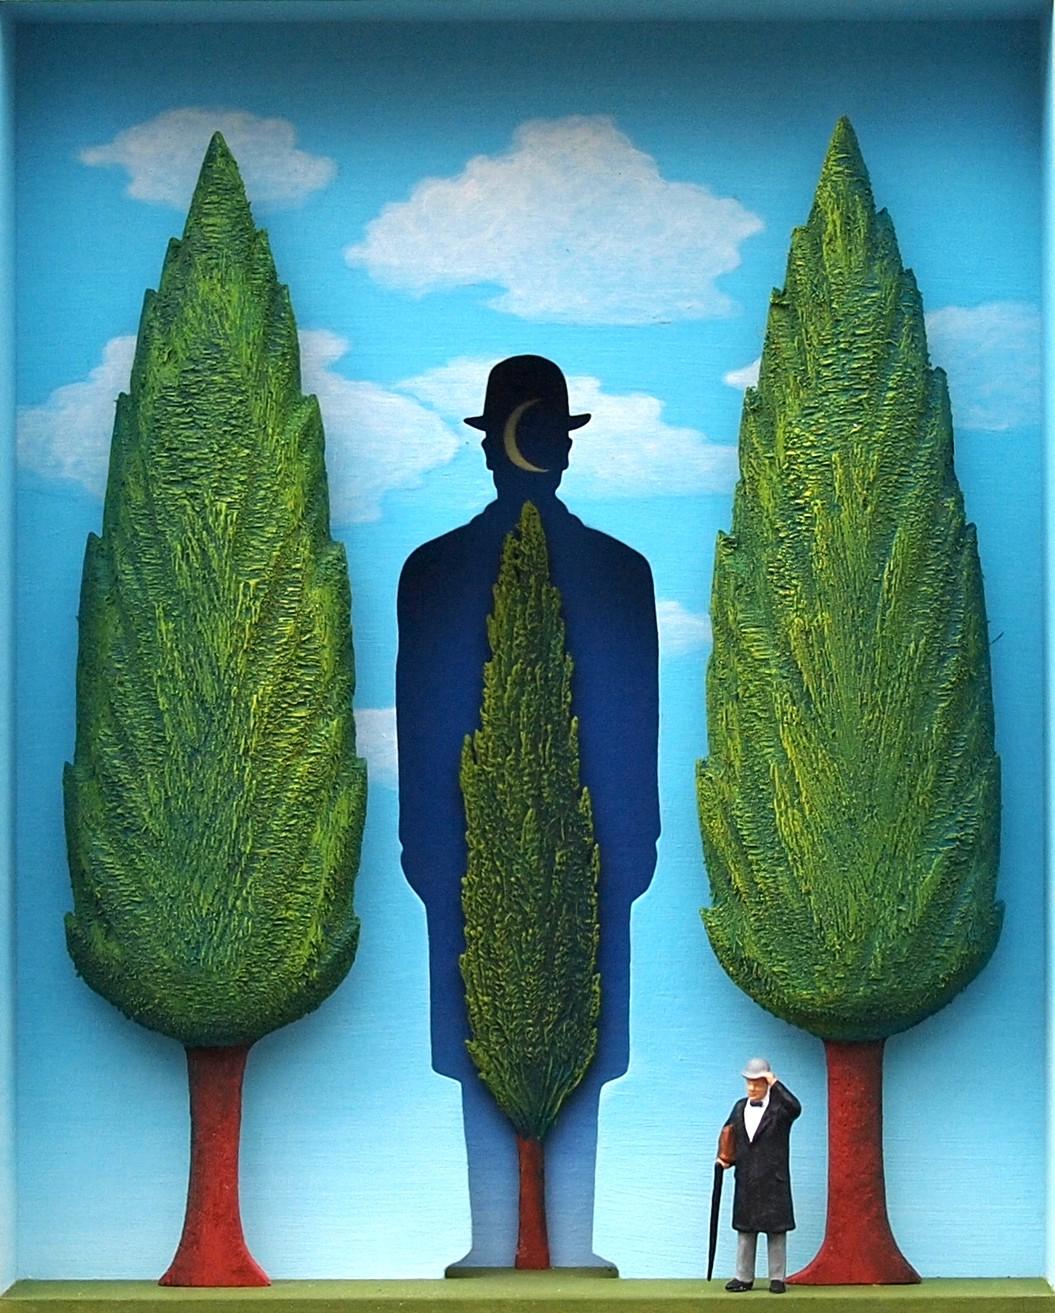 The Garden of Magritte (Le jardin de Magritte) - œuvre d'art contemporaine hommage au surréalisme belge 